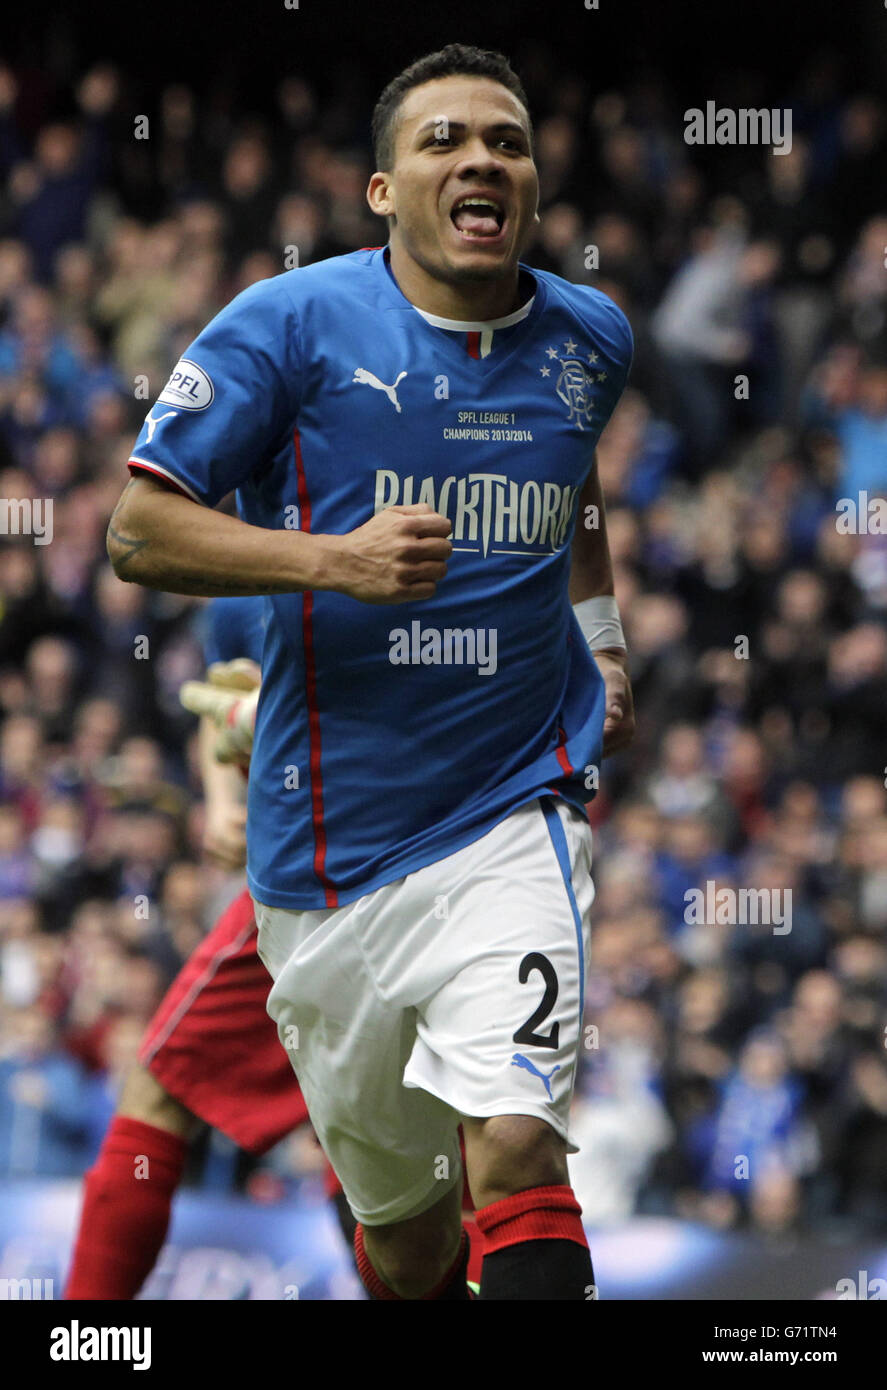 Arnold Peralta des Rangers célèbre son but lors du match Scottish League One au stade Ibrox, à Glasgow. Banque D'Images